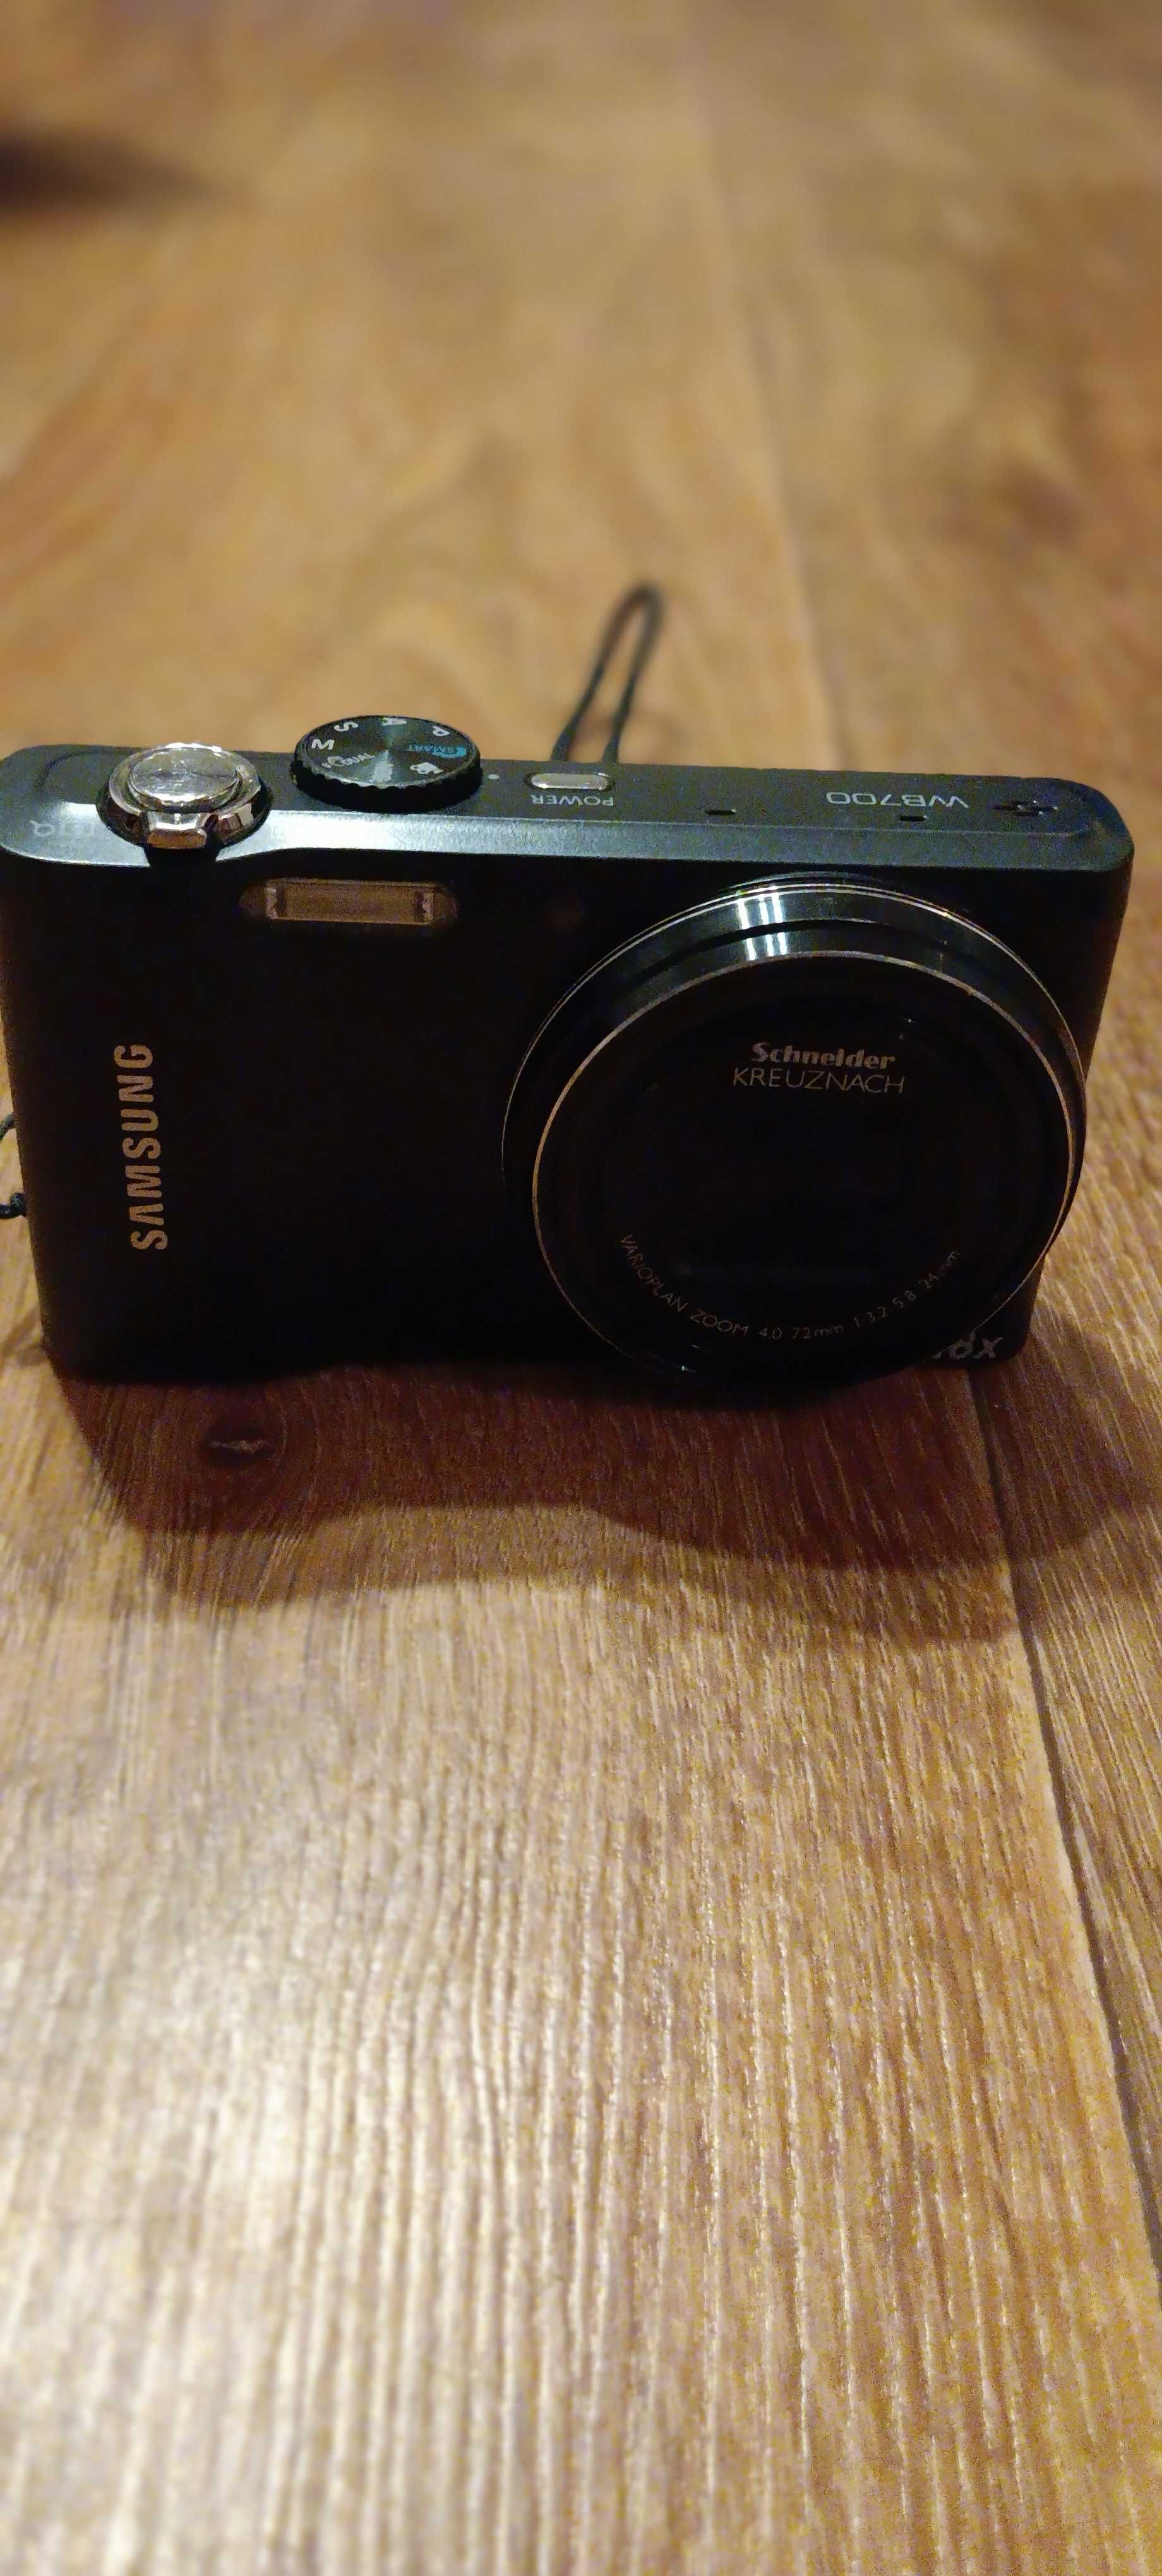 Продам фотоаппарат Samsung WB 700 - Б/У в отличном рабочем состоянии.